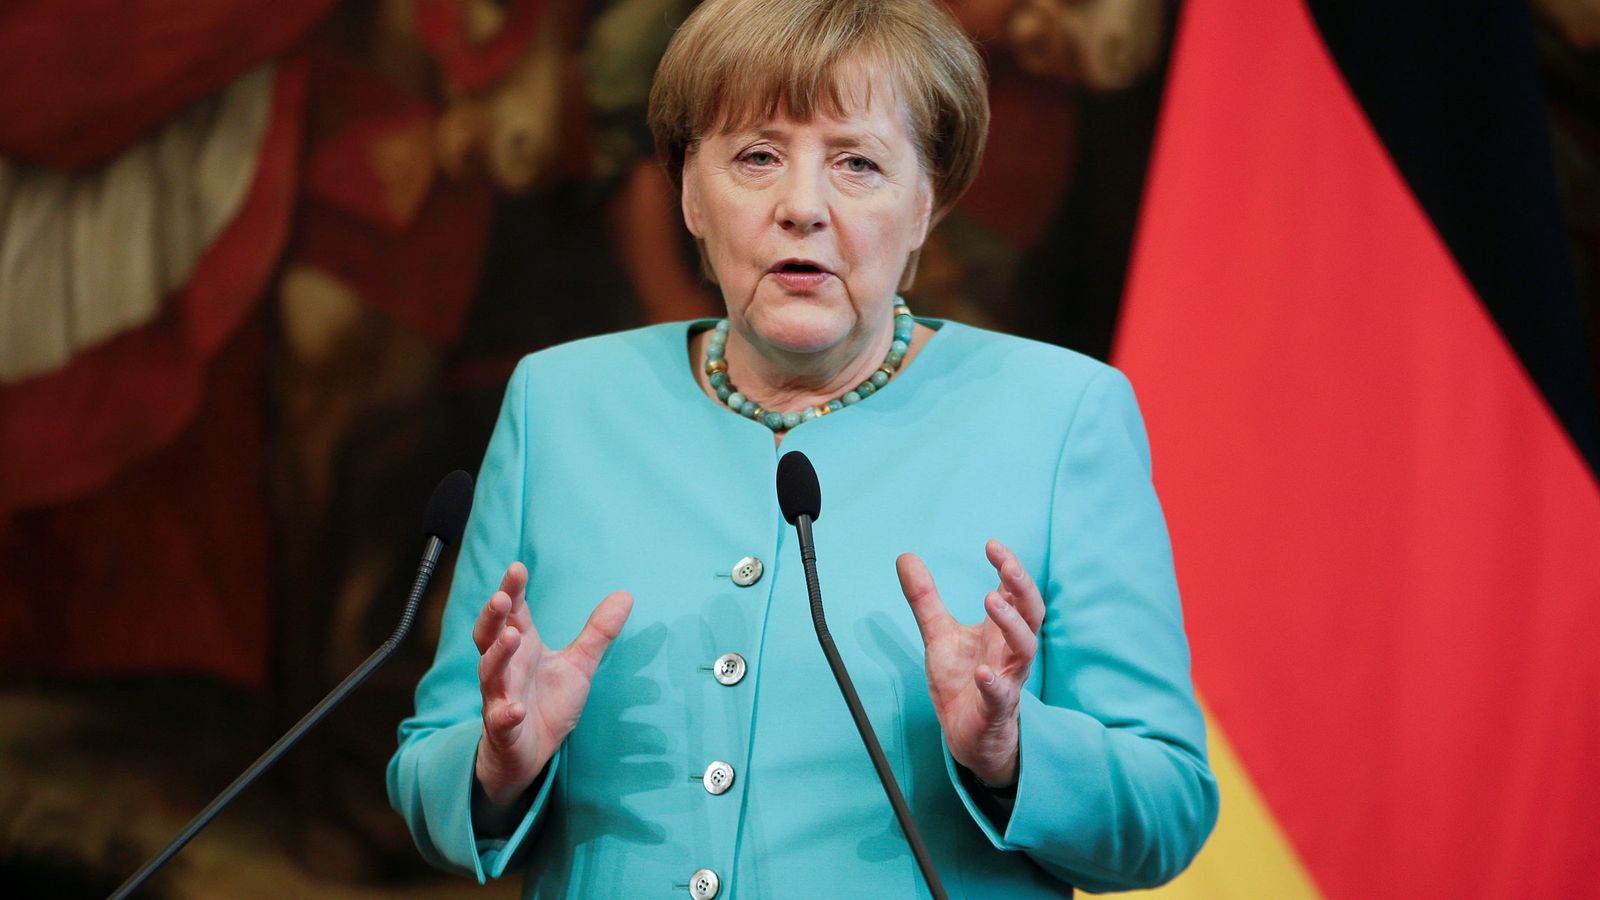 Foto: Aunque su cuerpo no se ajuste a las medidas estándar, Merkel no tiene problema, porque confía en sí misma. (Reuters/Max Rossi)